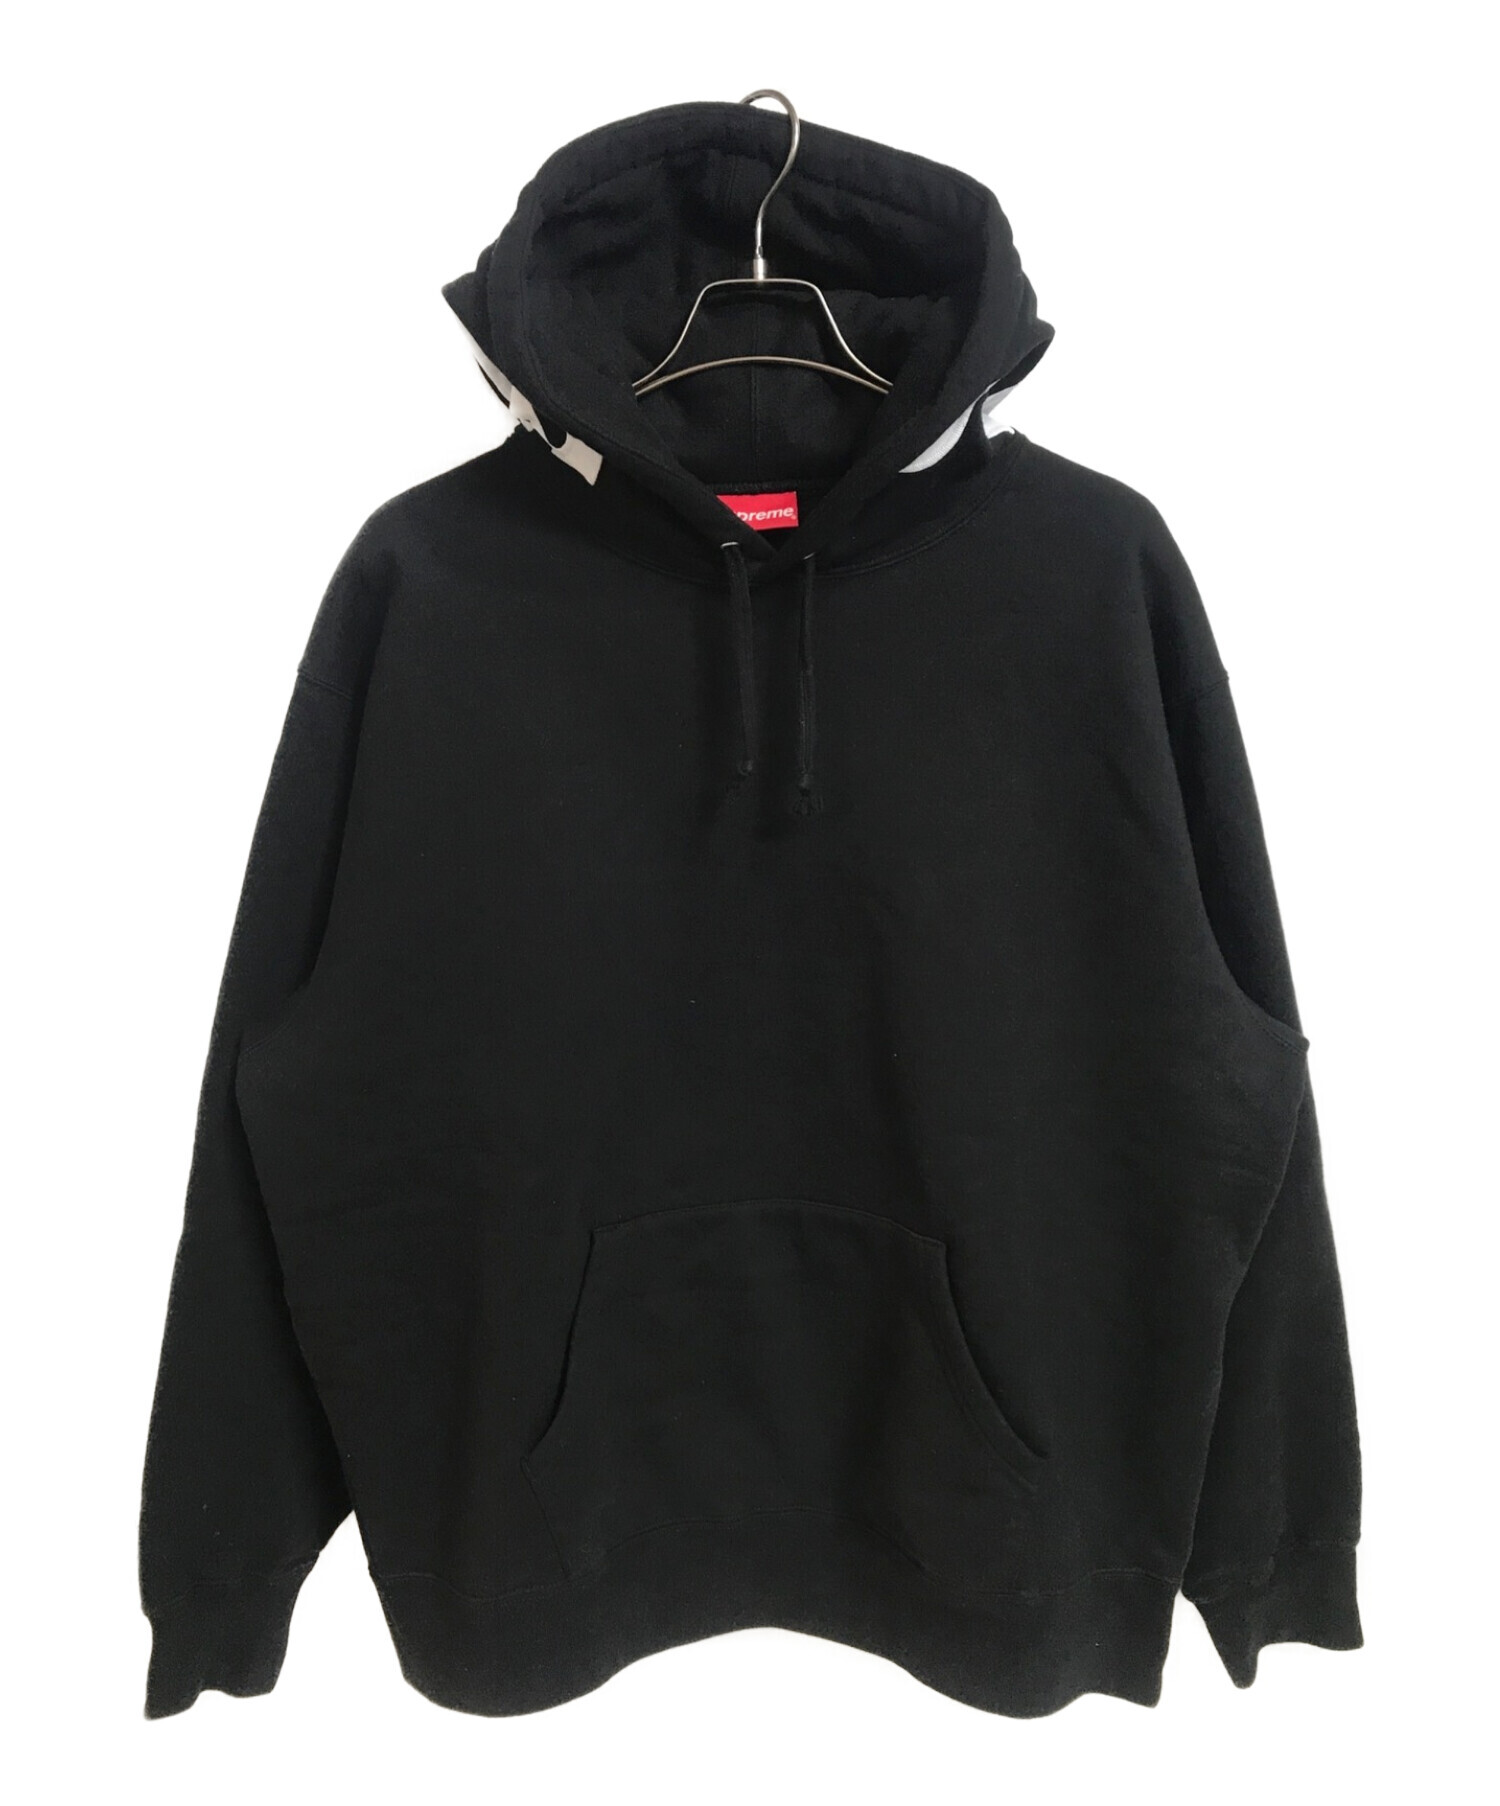 一度着用のみの美品ですSupreme Contrast Hooded Sweatshirt 黒 L